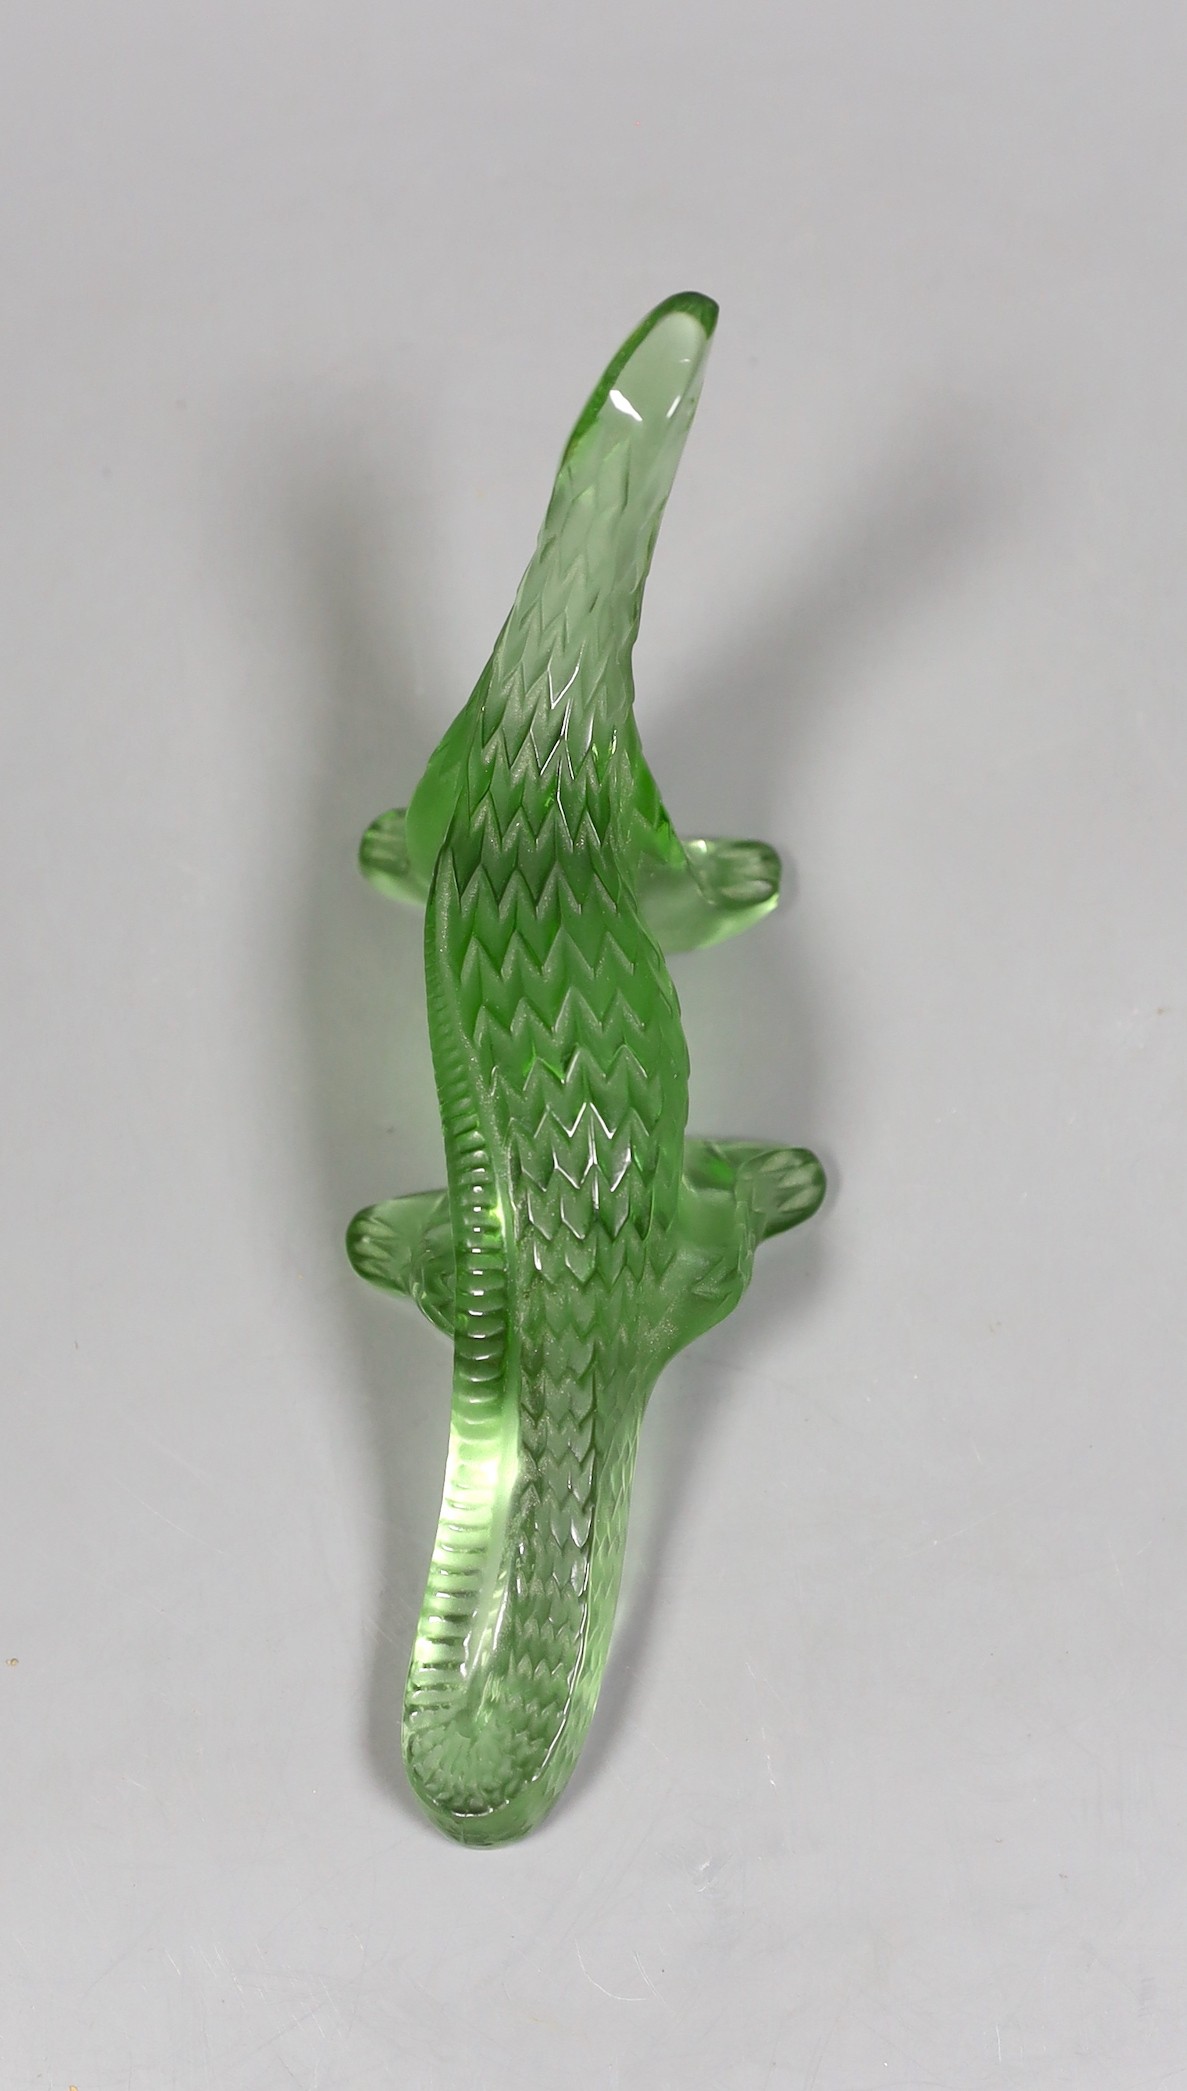 A Lalique green glass salamander, 18cm long